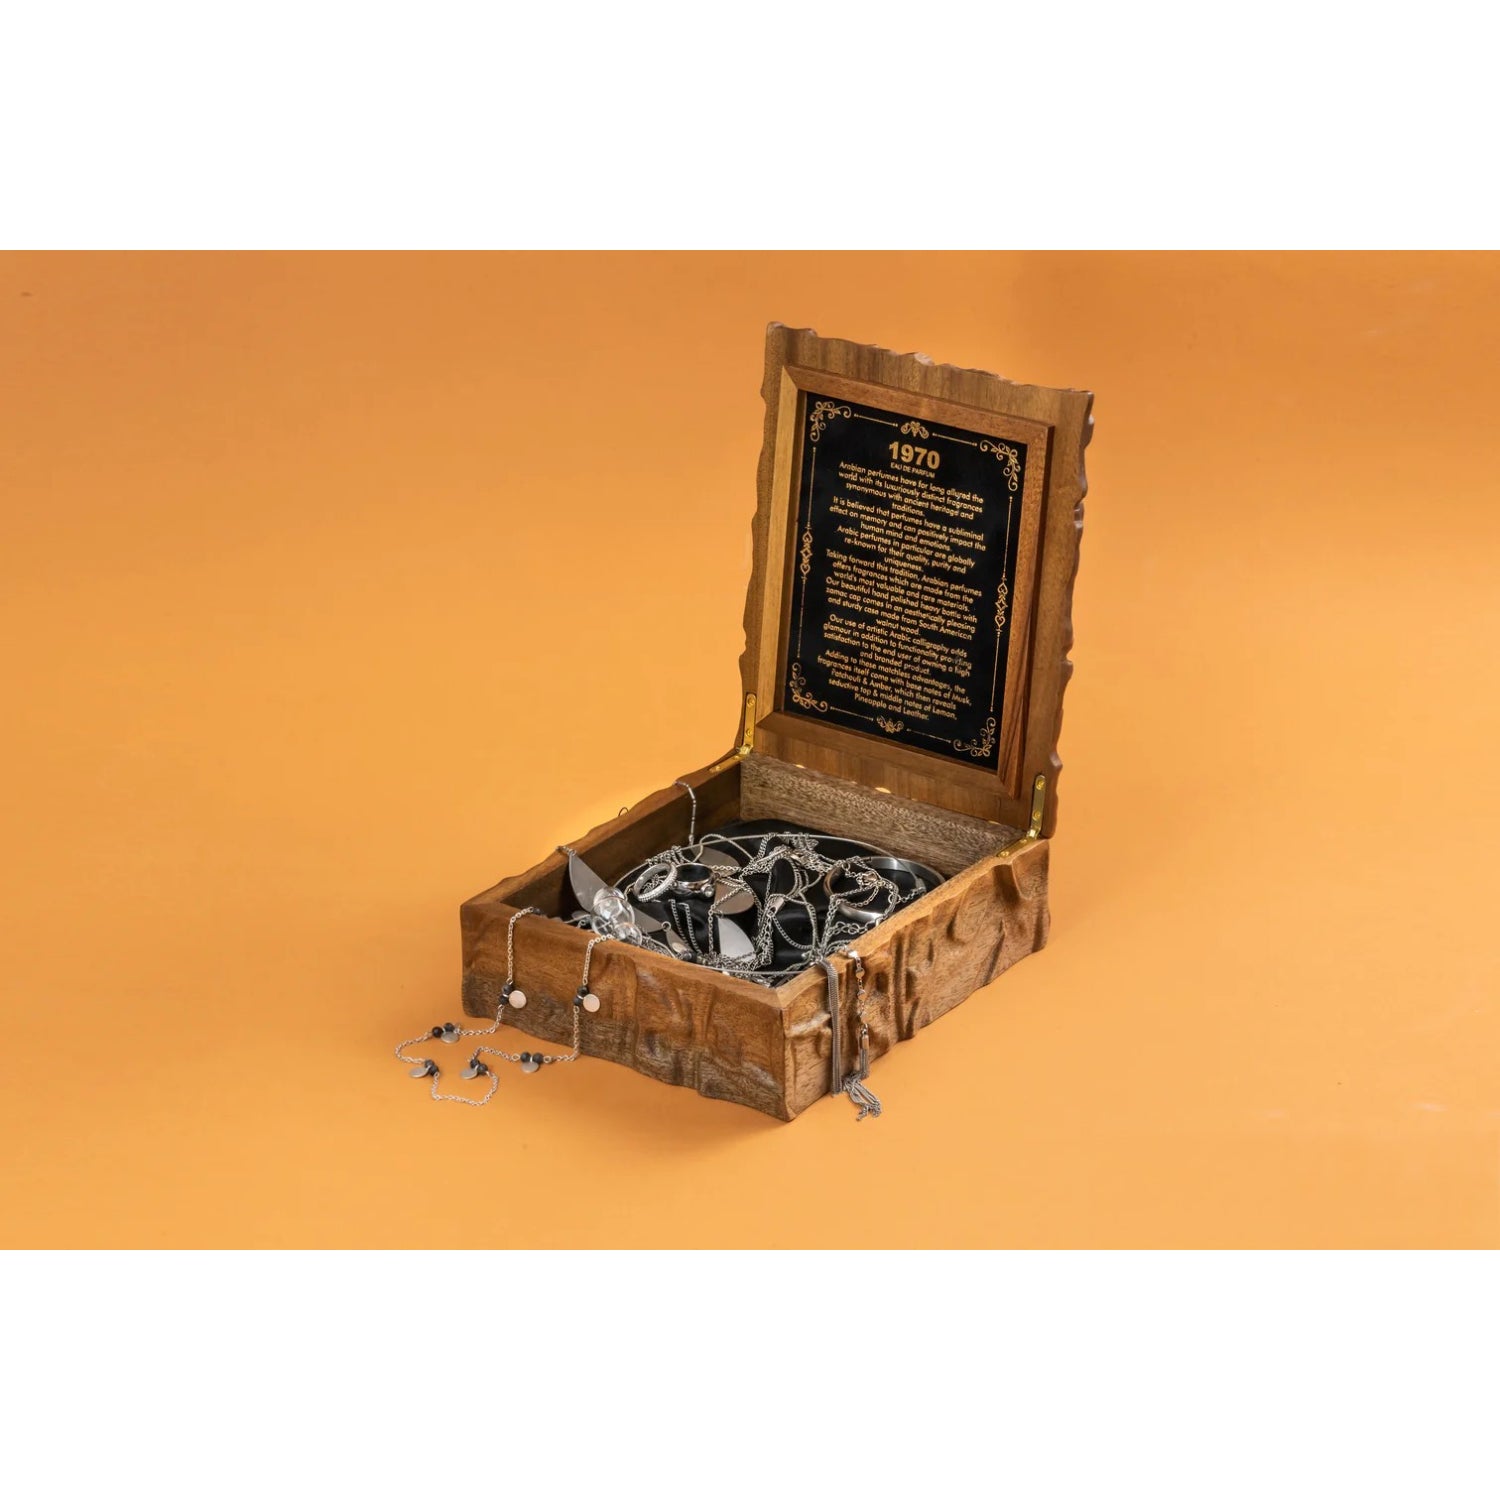 1970 Eau de Parfum with Wooden Gift Box